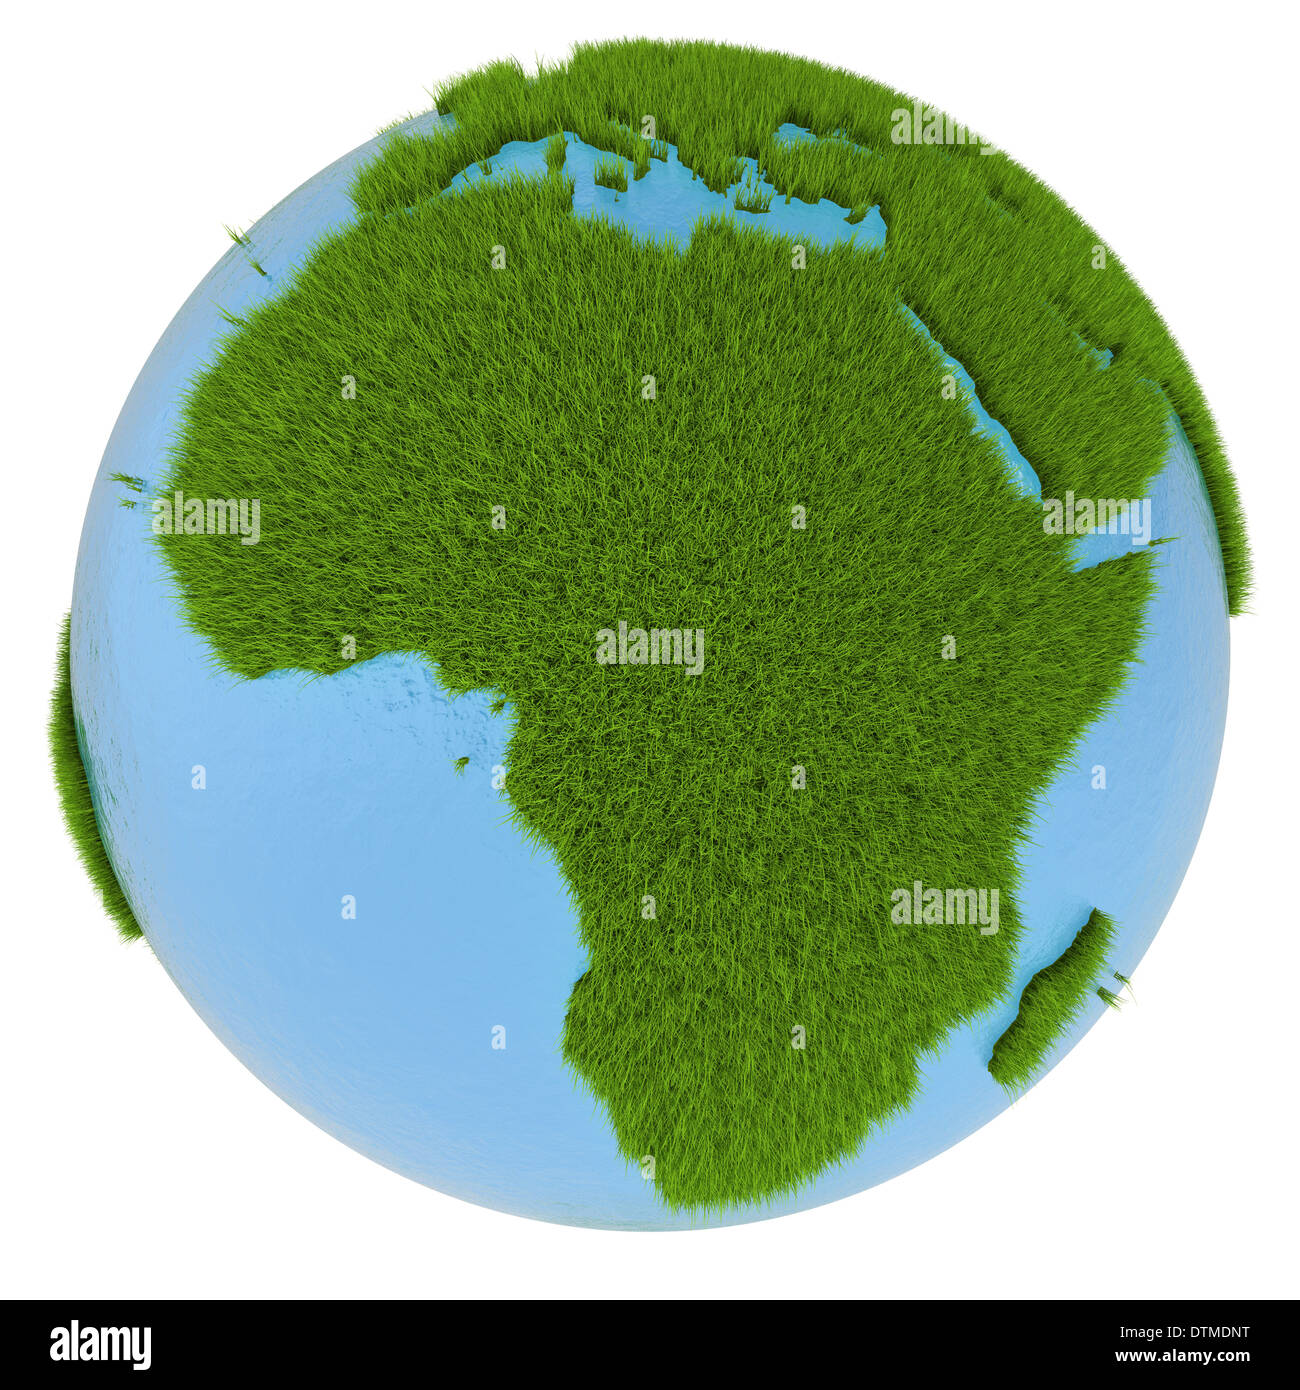 Il continente africano sul pianeta verde ricoperto di erba isolati su sfondo bianco. Concetto di ecologia e ambiente pulito Foto Stock